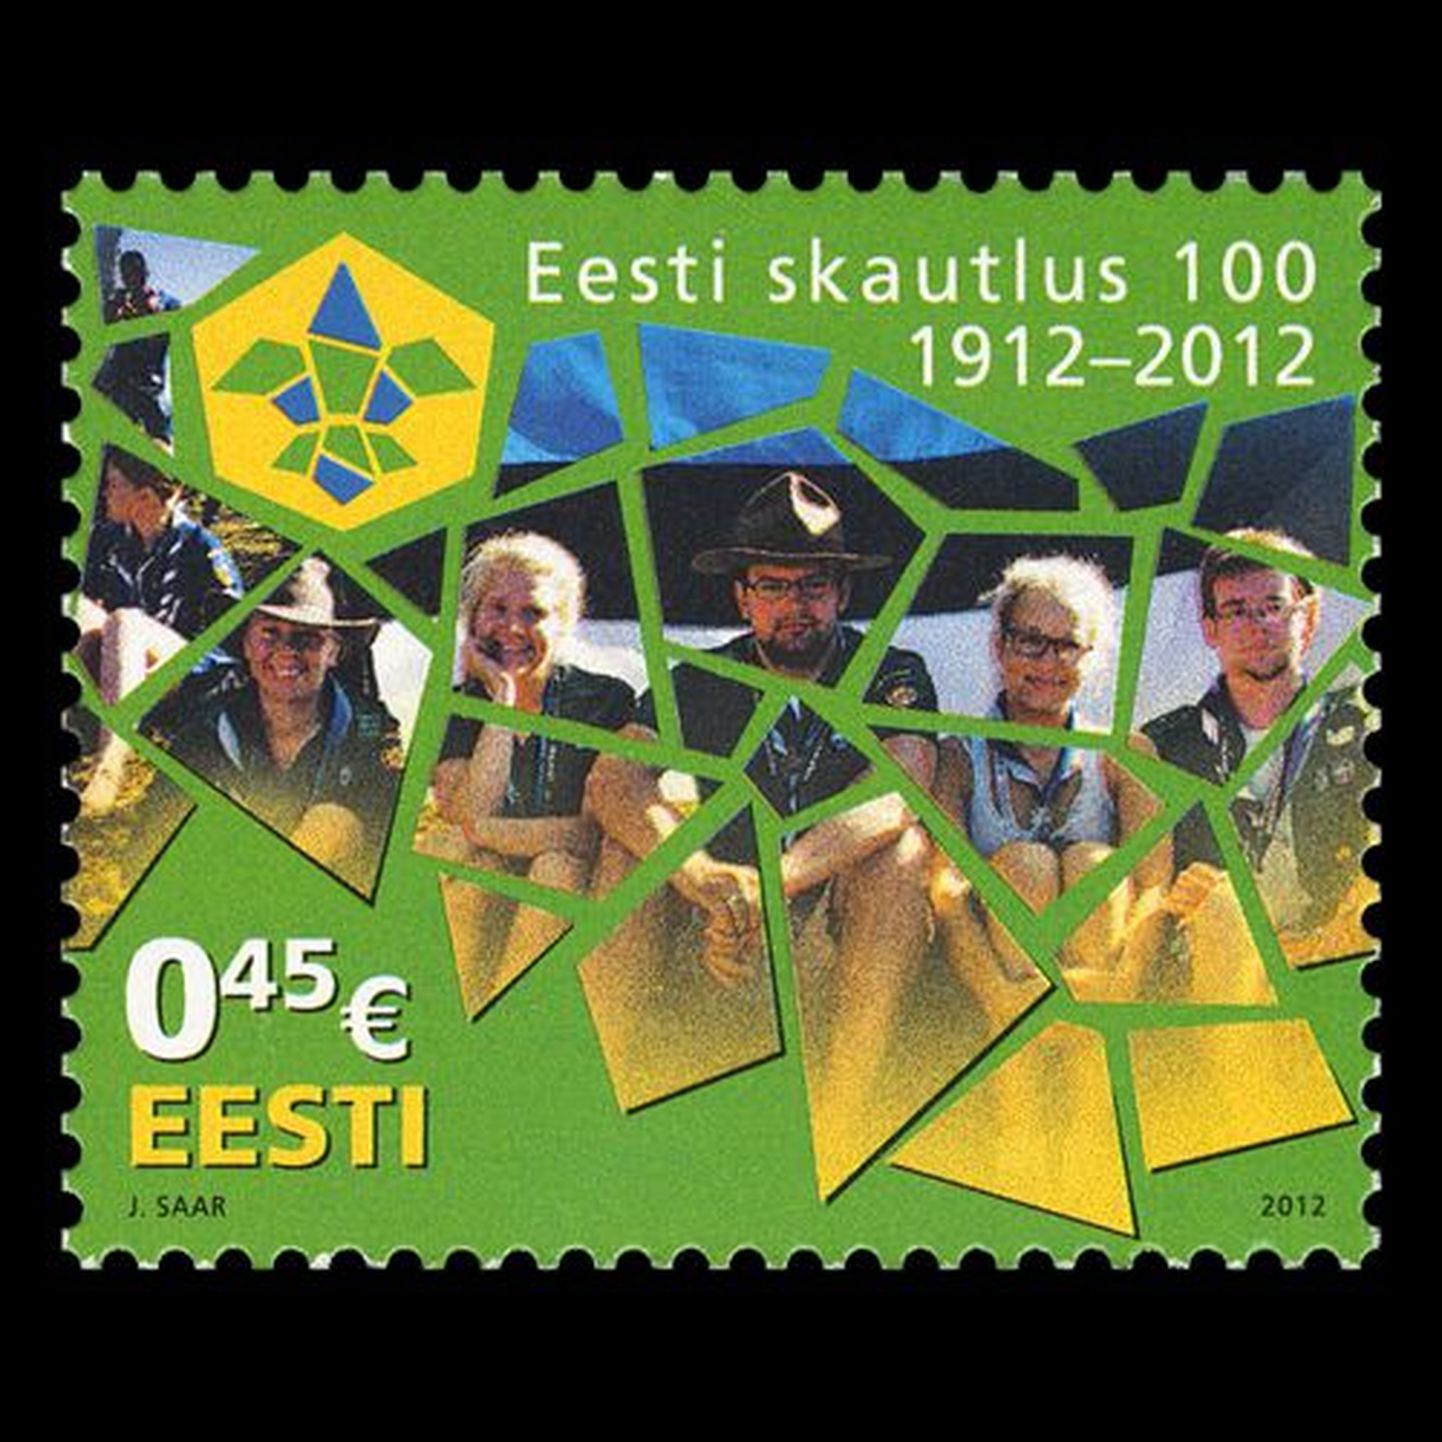 Eesti skautluse 100. aastapäevaks välja antud postmark.